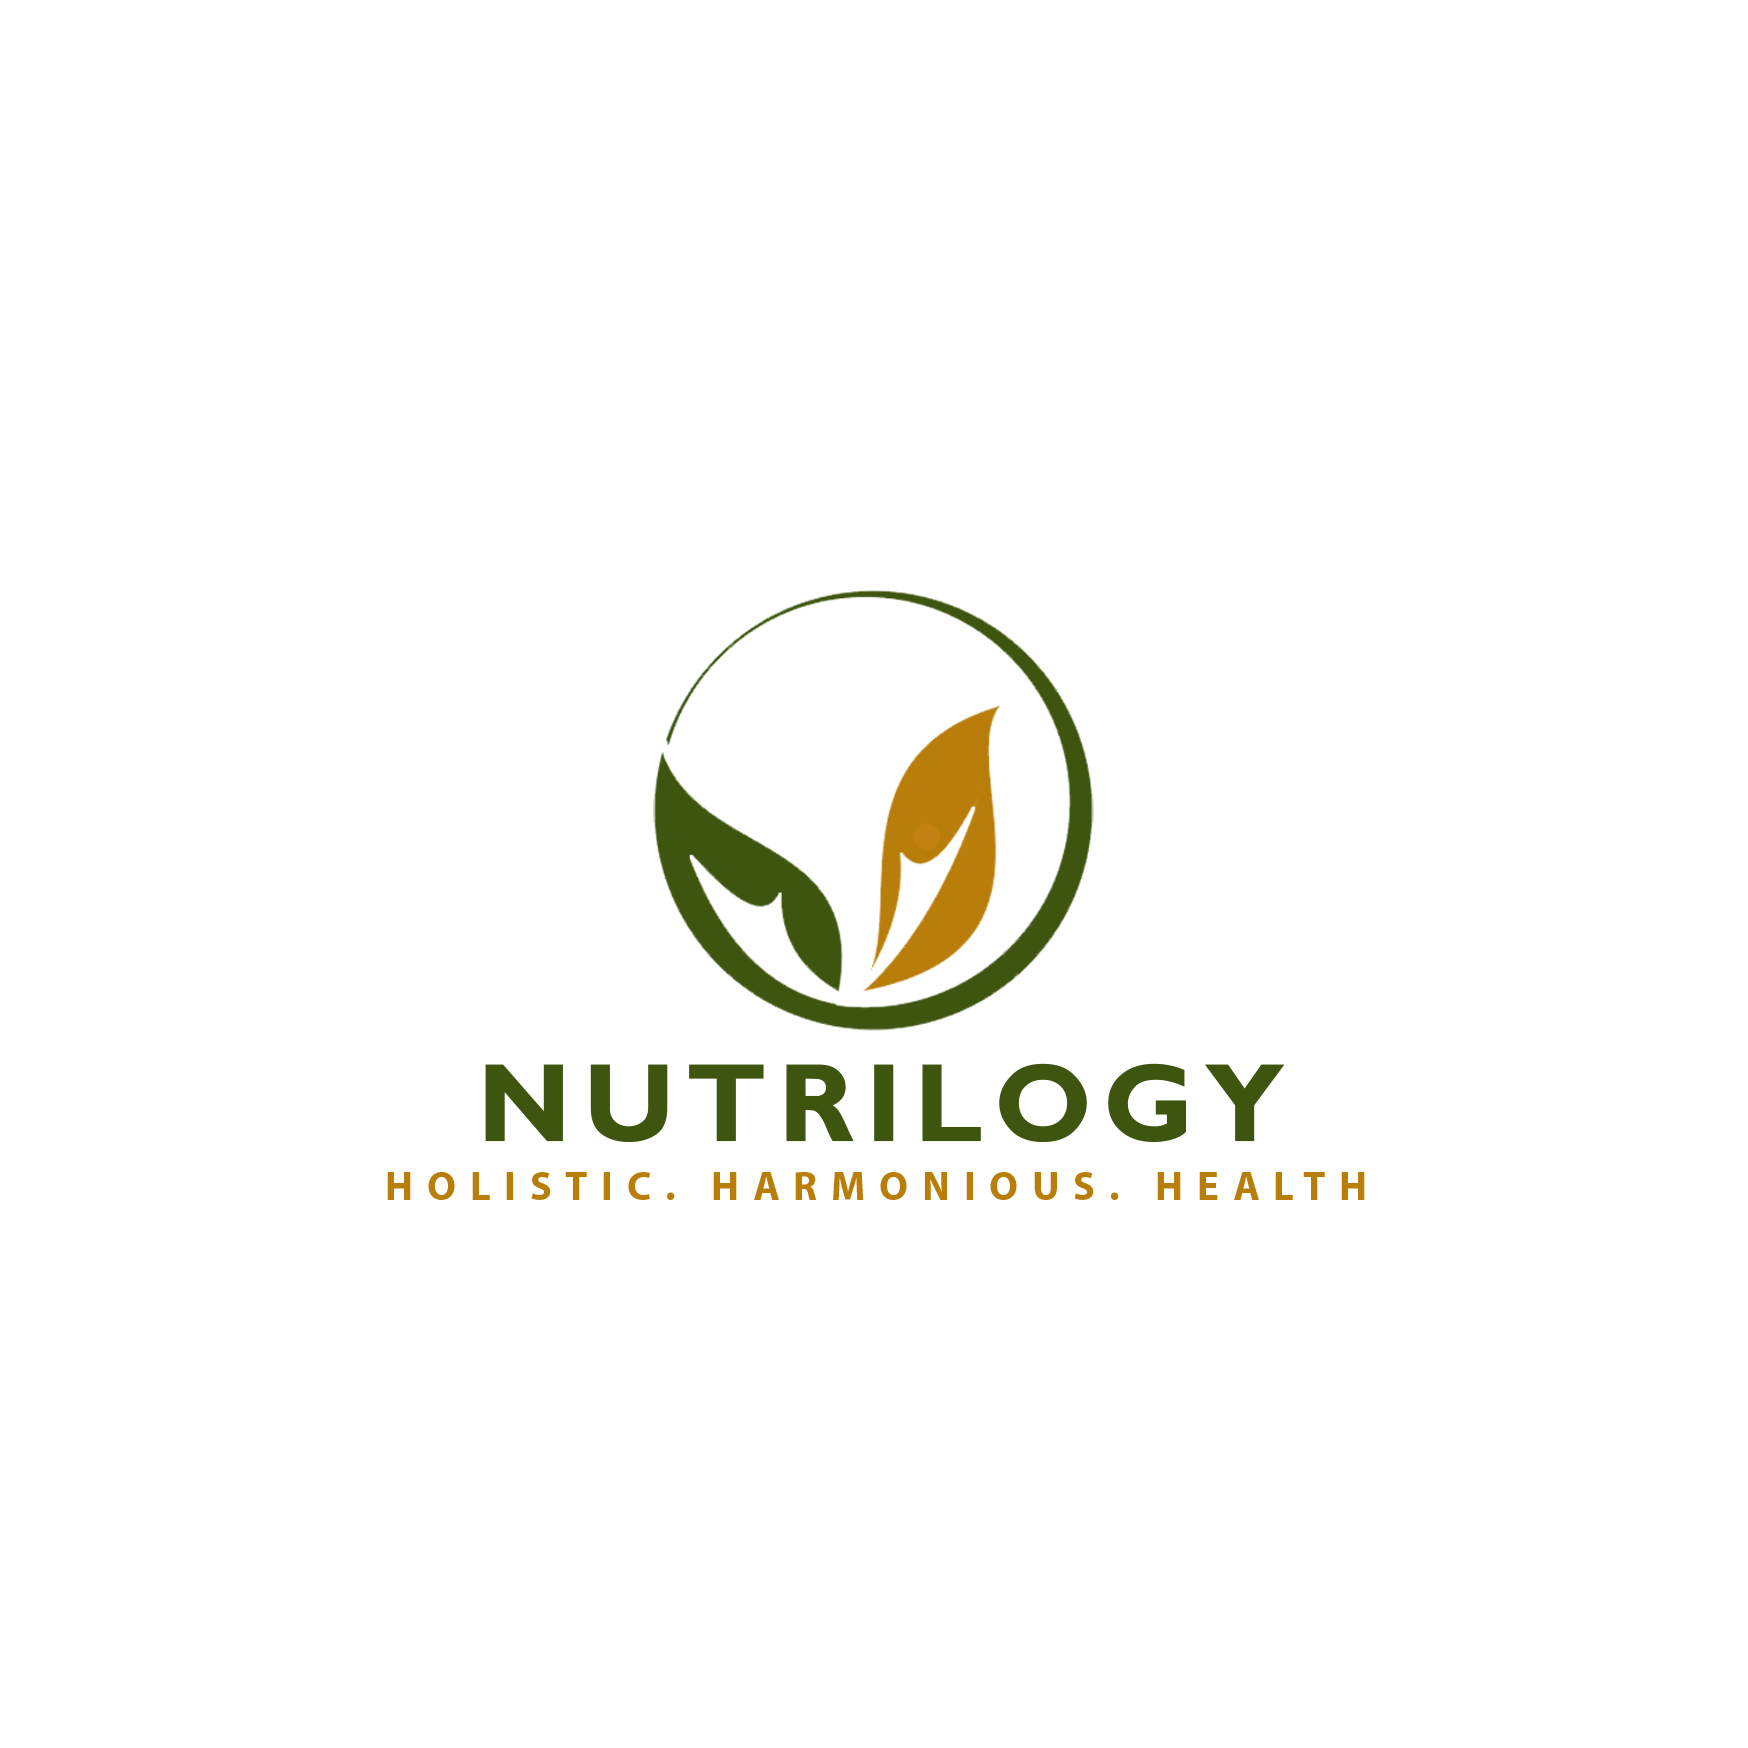 Nutrilogy